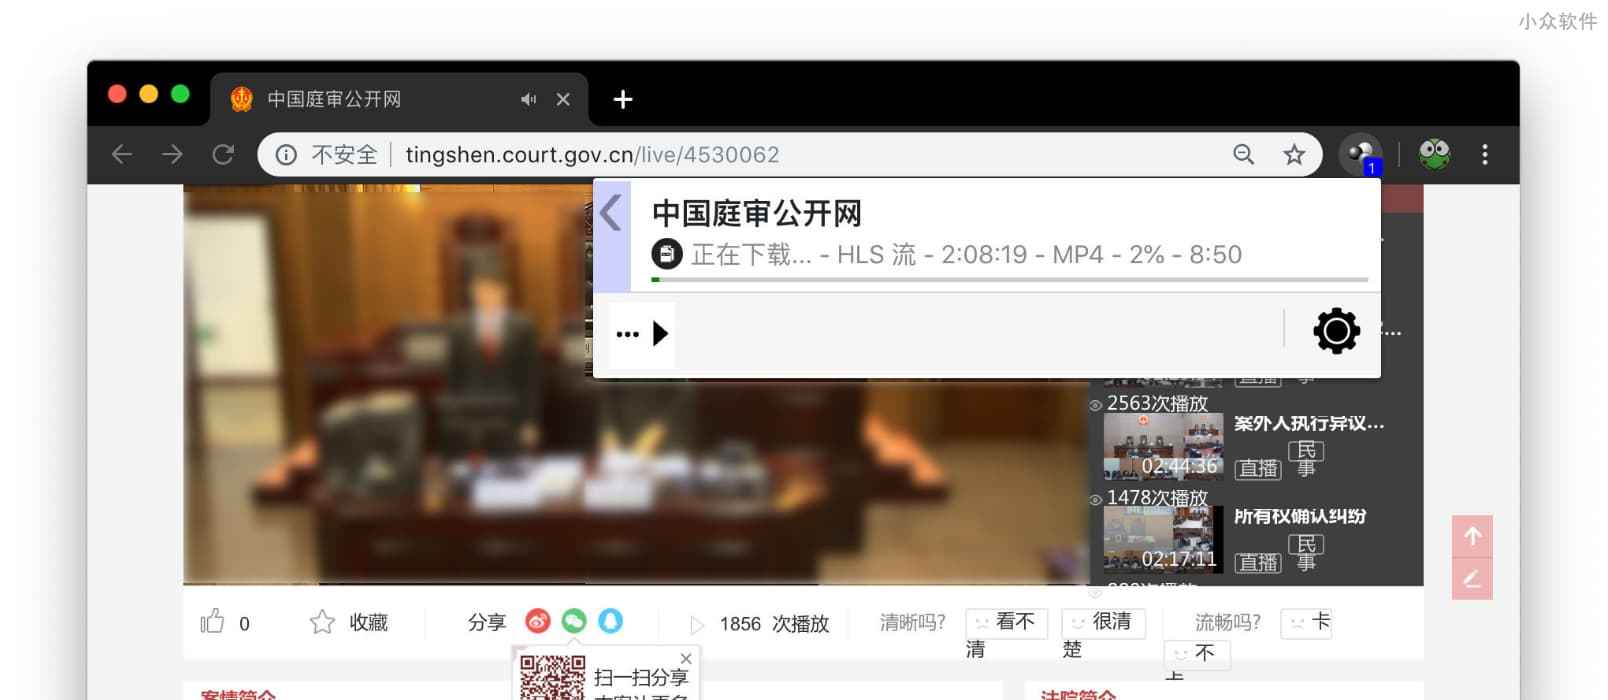 如何下载《中国庭审网》等 flv 格式的在线视频？ 1